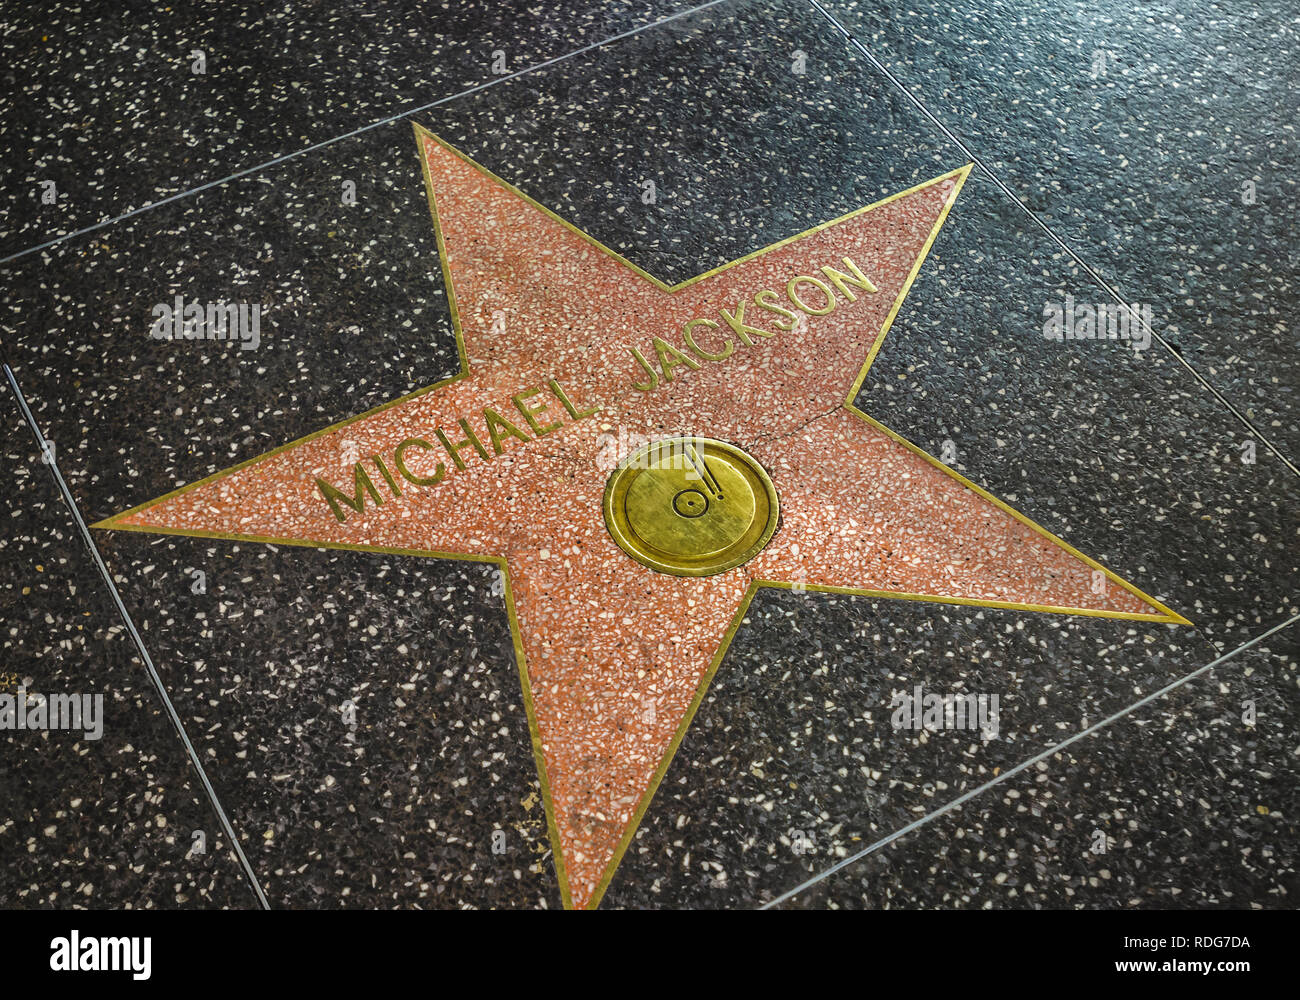 Los Angeles, Kalifornien, USA - Juni 09, 2011: Name des Pop Star Michael Jackson auf dem Hollywood Walk of Fame. Jacksons Stern, im Jahr 1984 eingestellt. Stockfoto